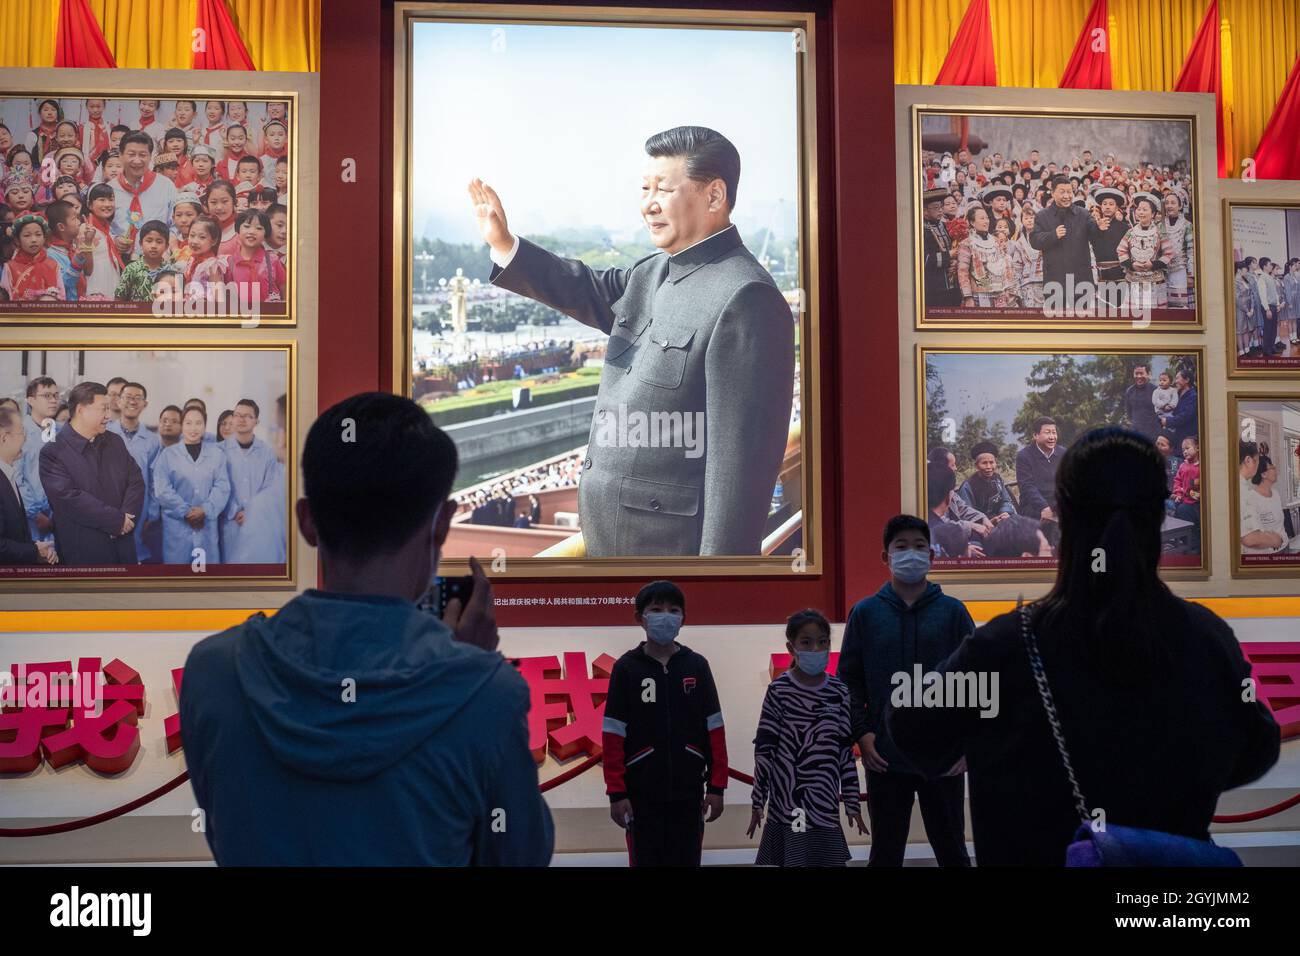 Les gens regardent des images montrant le président chinois Xi Jinping au Musée du Parti communiste de Chine à Beijing.08 octobre 2021 Banque D'Images